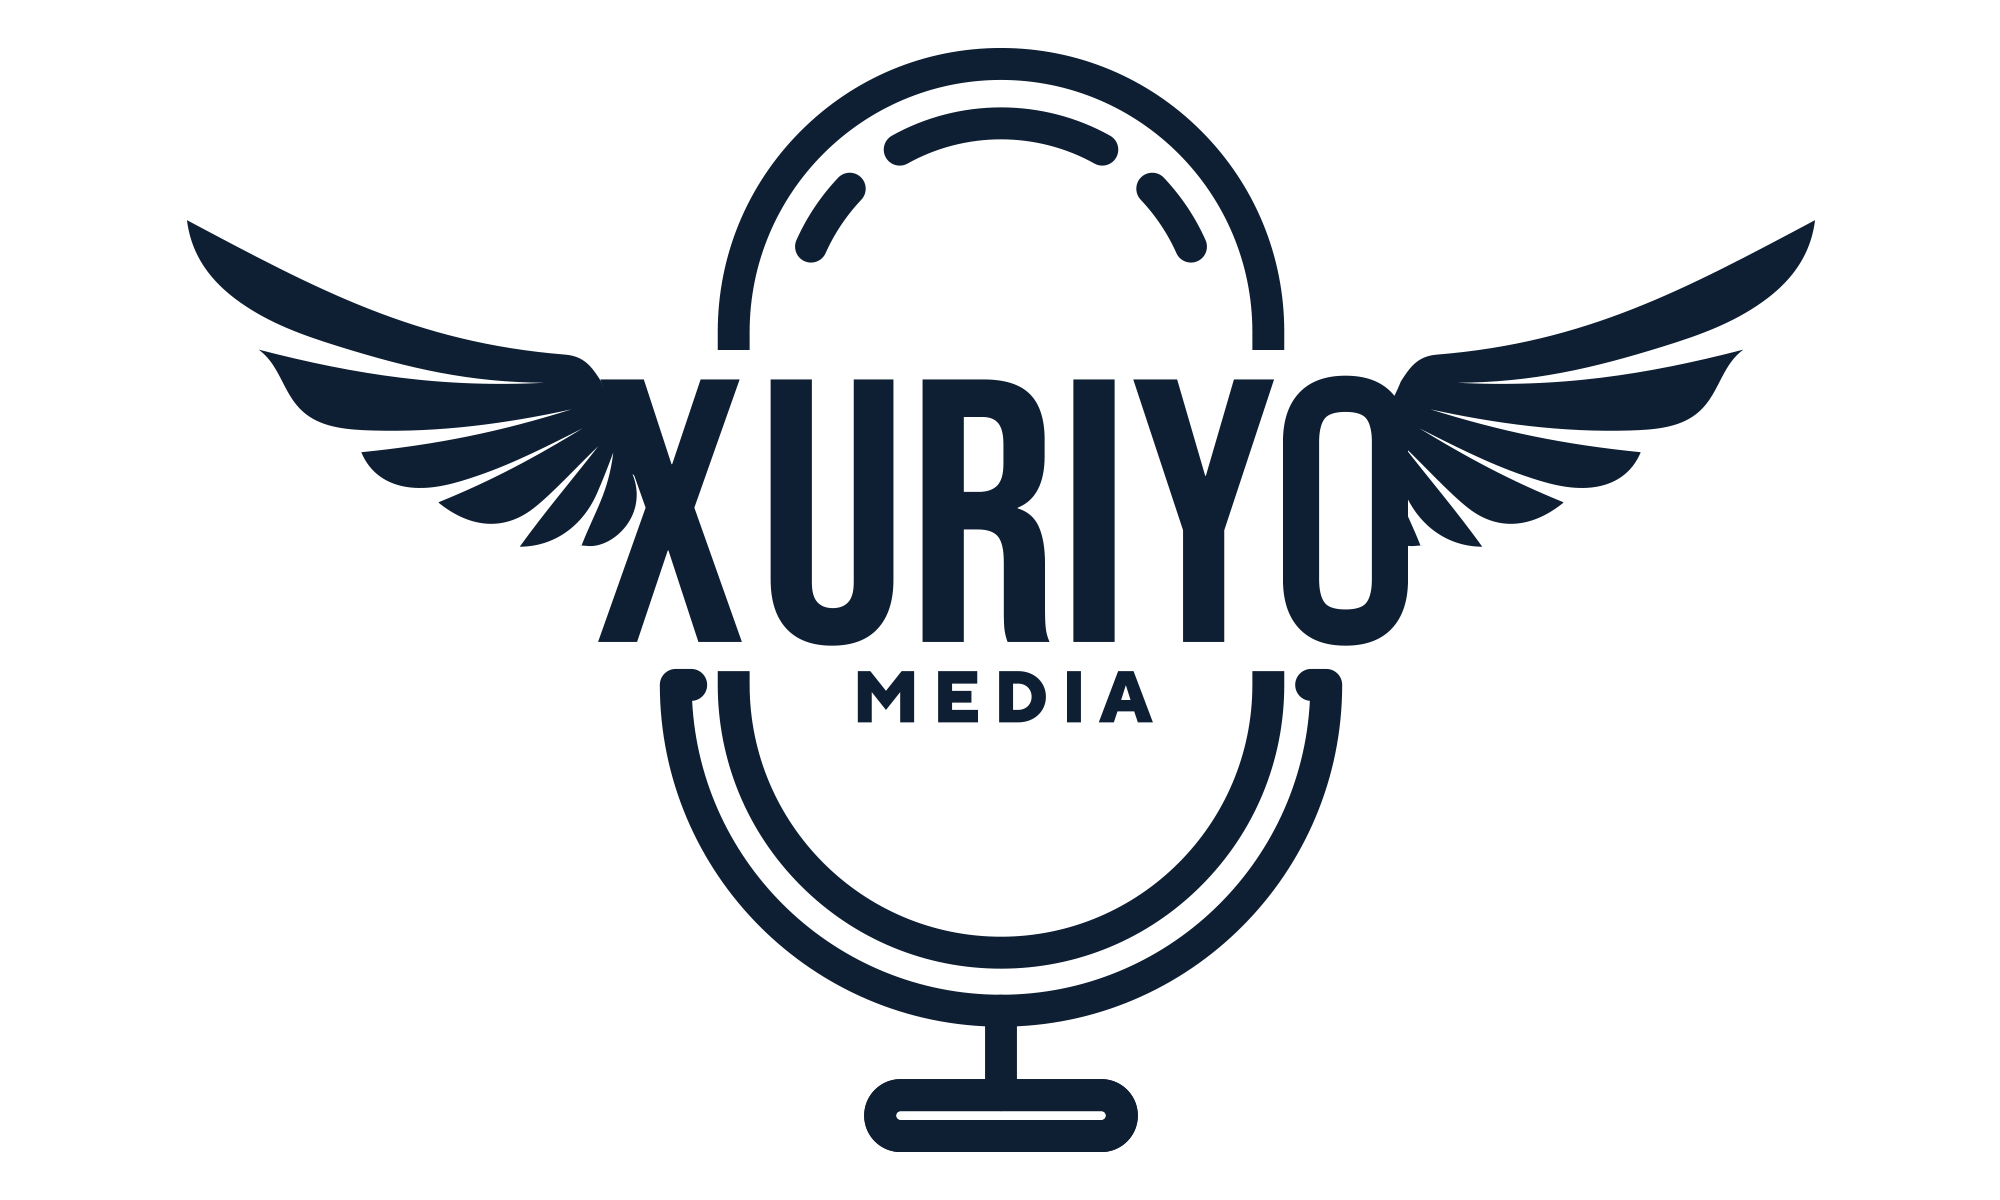 Xuriyo Online